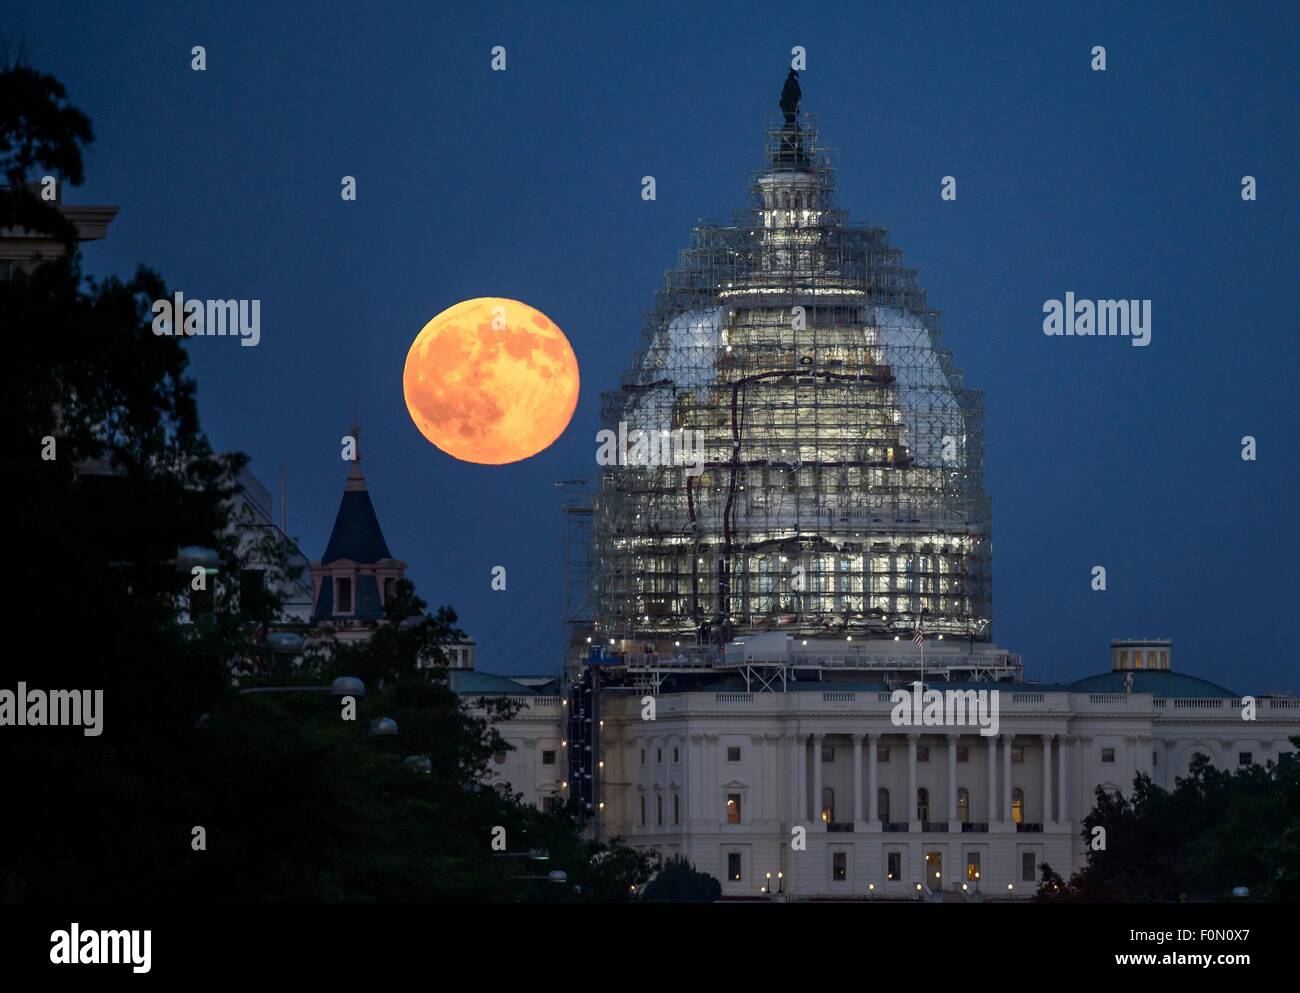 Une deuxième pleine lune du mois de juillet s'élève derrière le dôme de la capitale américaine en ce moment incased dans l'échafaudage pour la restauration, le 31 juillet 2015 à Washington, DC. Deux pleines lunes dans le même mois sont souvent désignées comme une Lune Bleue. Banque D'Images